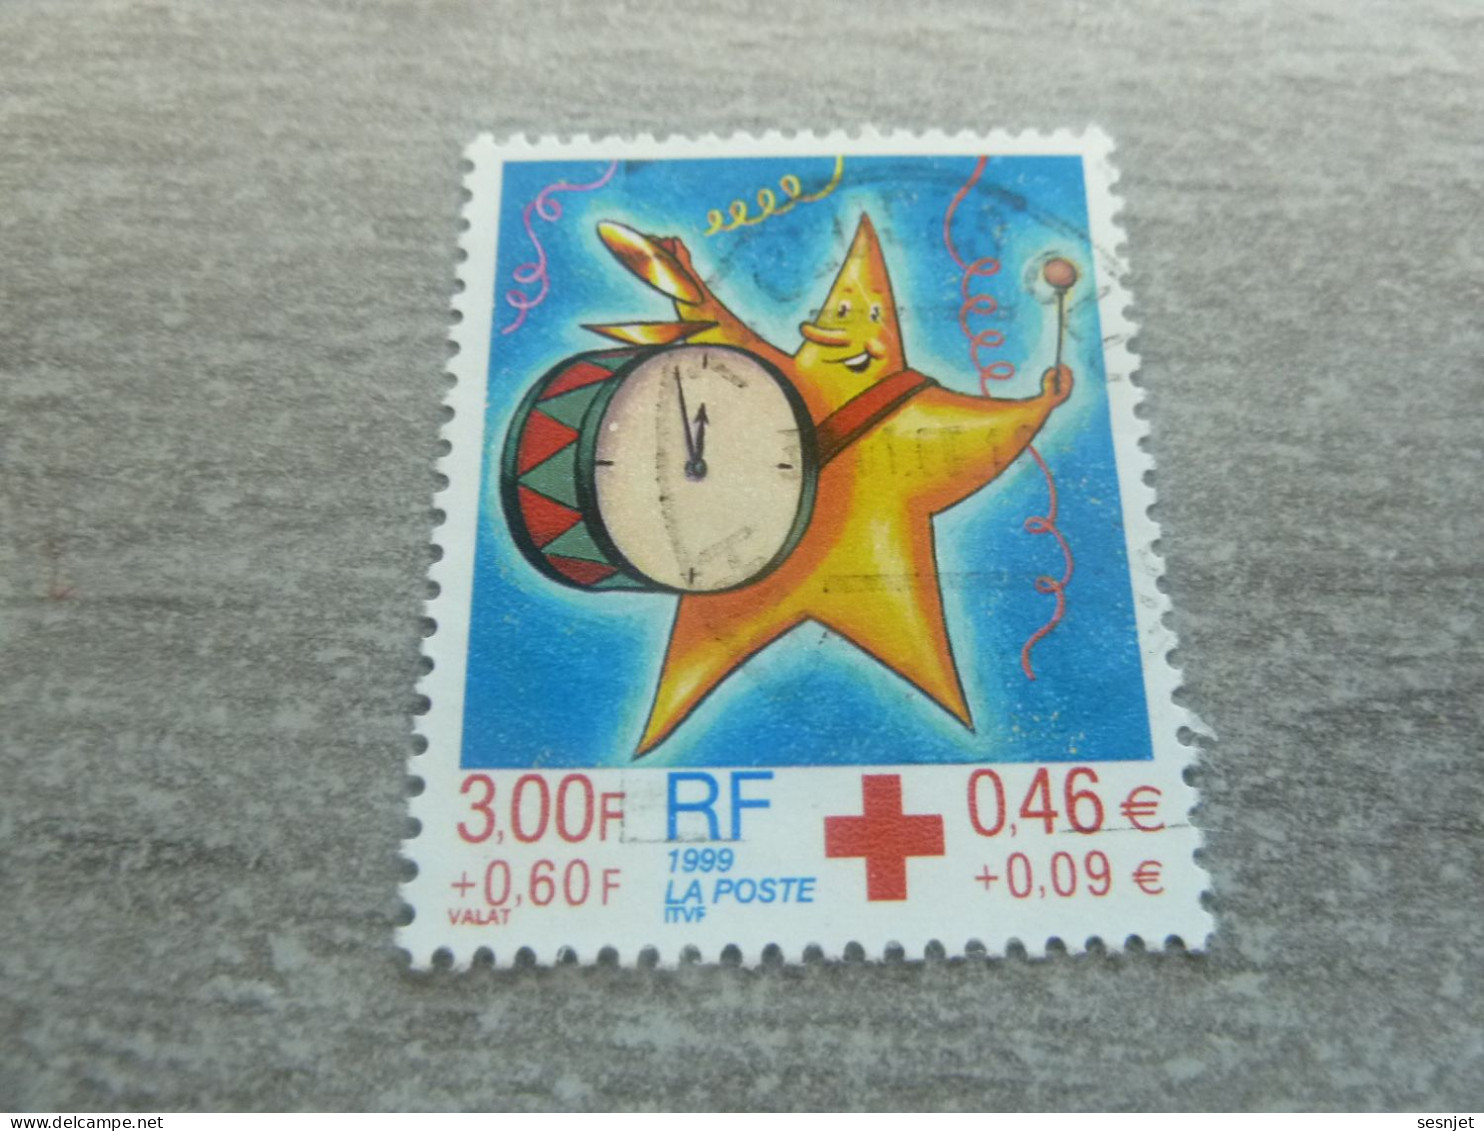 Croix-Rouge - Fêtes De Fin D'Année - 3f.+0.60c. (0.46+0.09 €) - Yt 3288 - Multicolore - Oblitéré - Année 1999 - - Rotes Kreuz